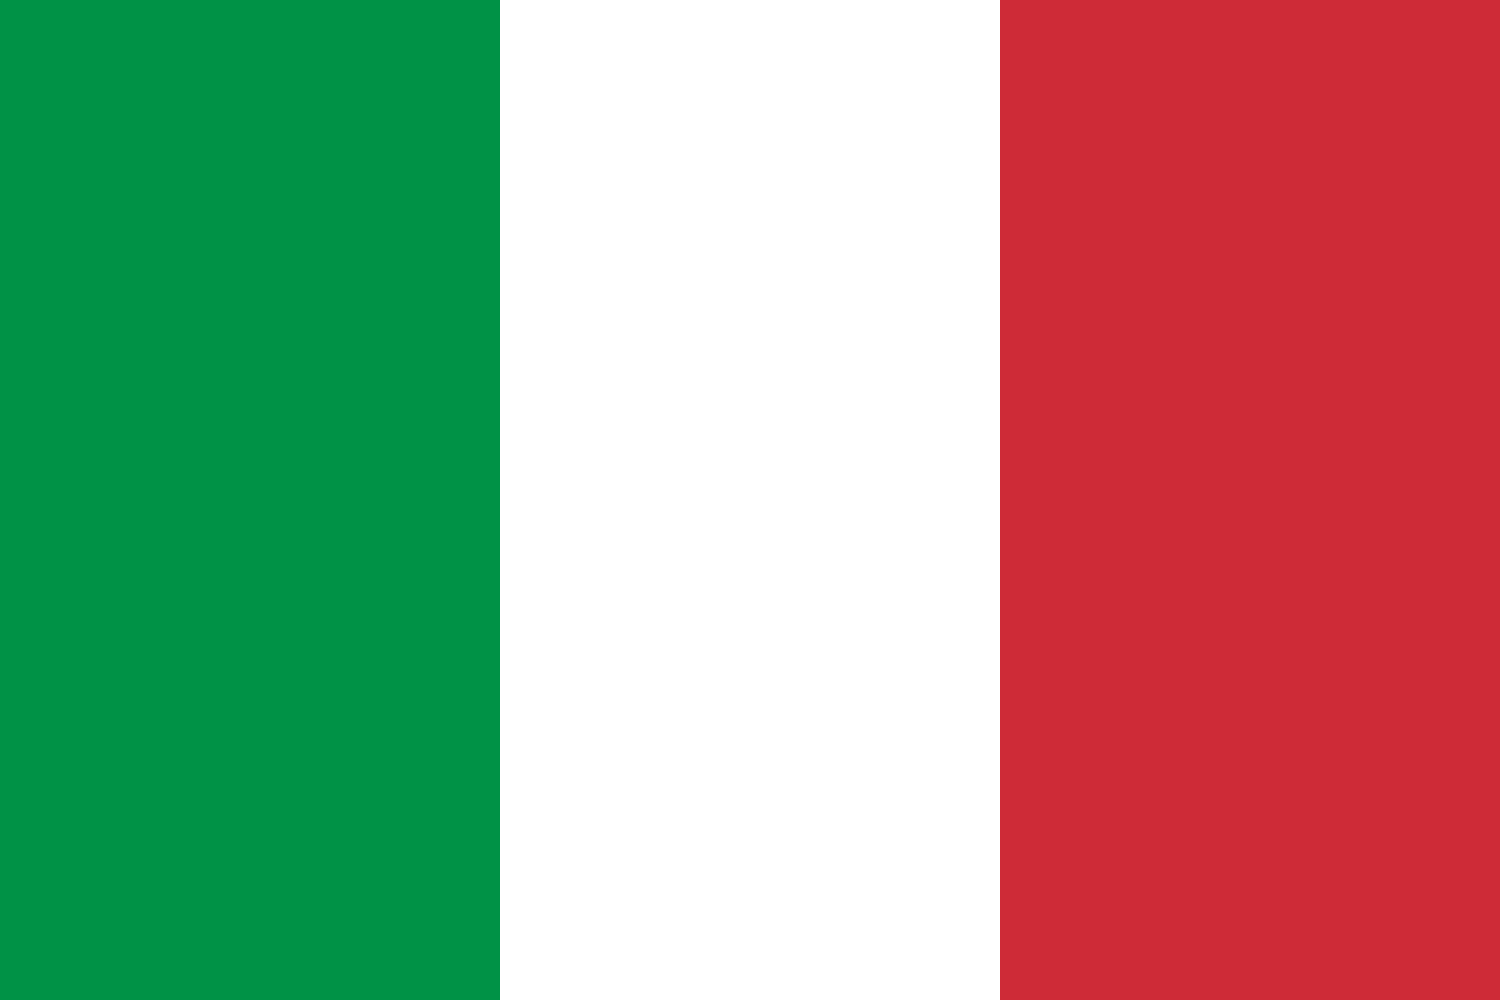 イタリア国旗が言語をイタリア語に変更